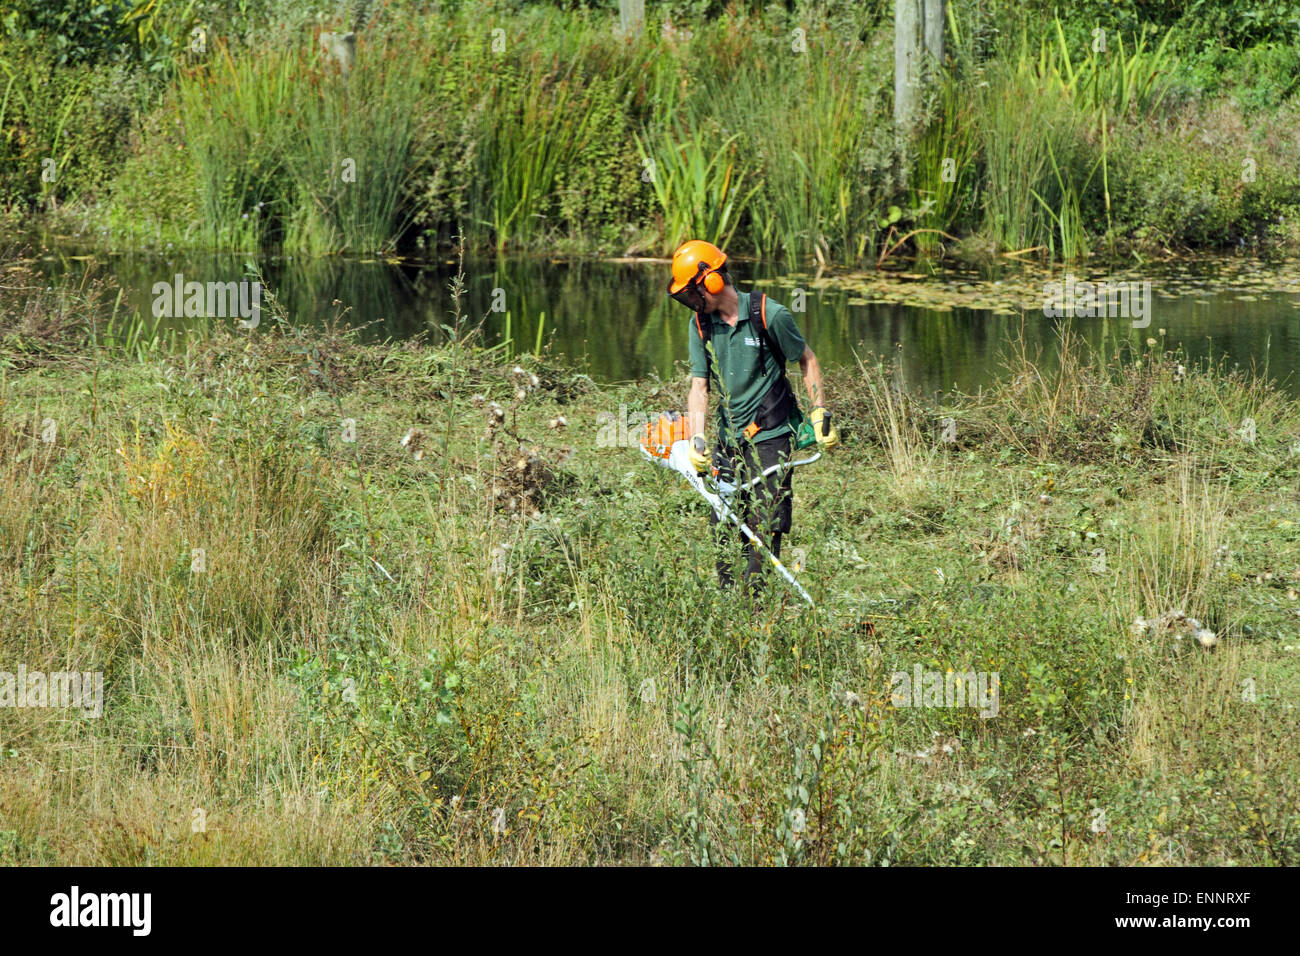 Volver strimming trabajador las malezas en una reserva natural. Foto de stock